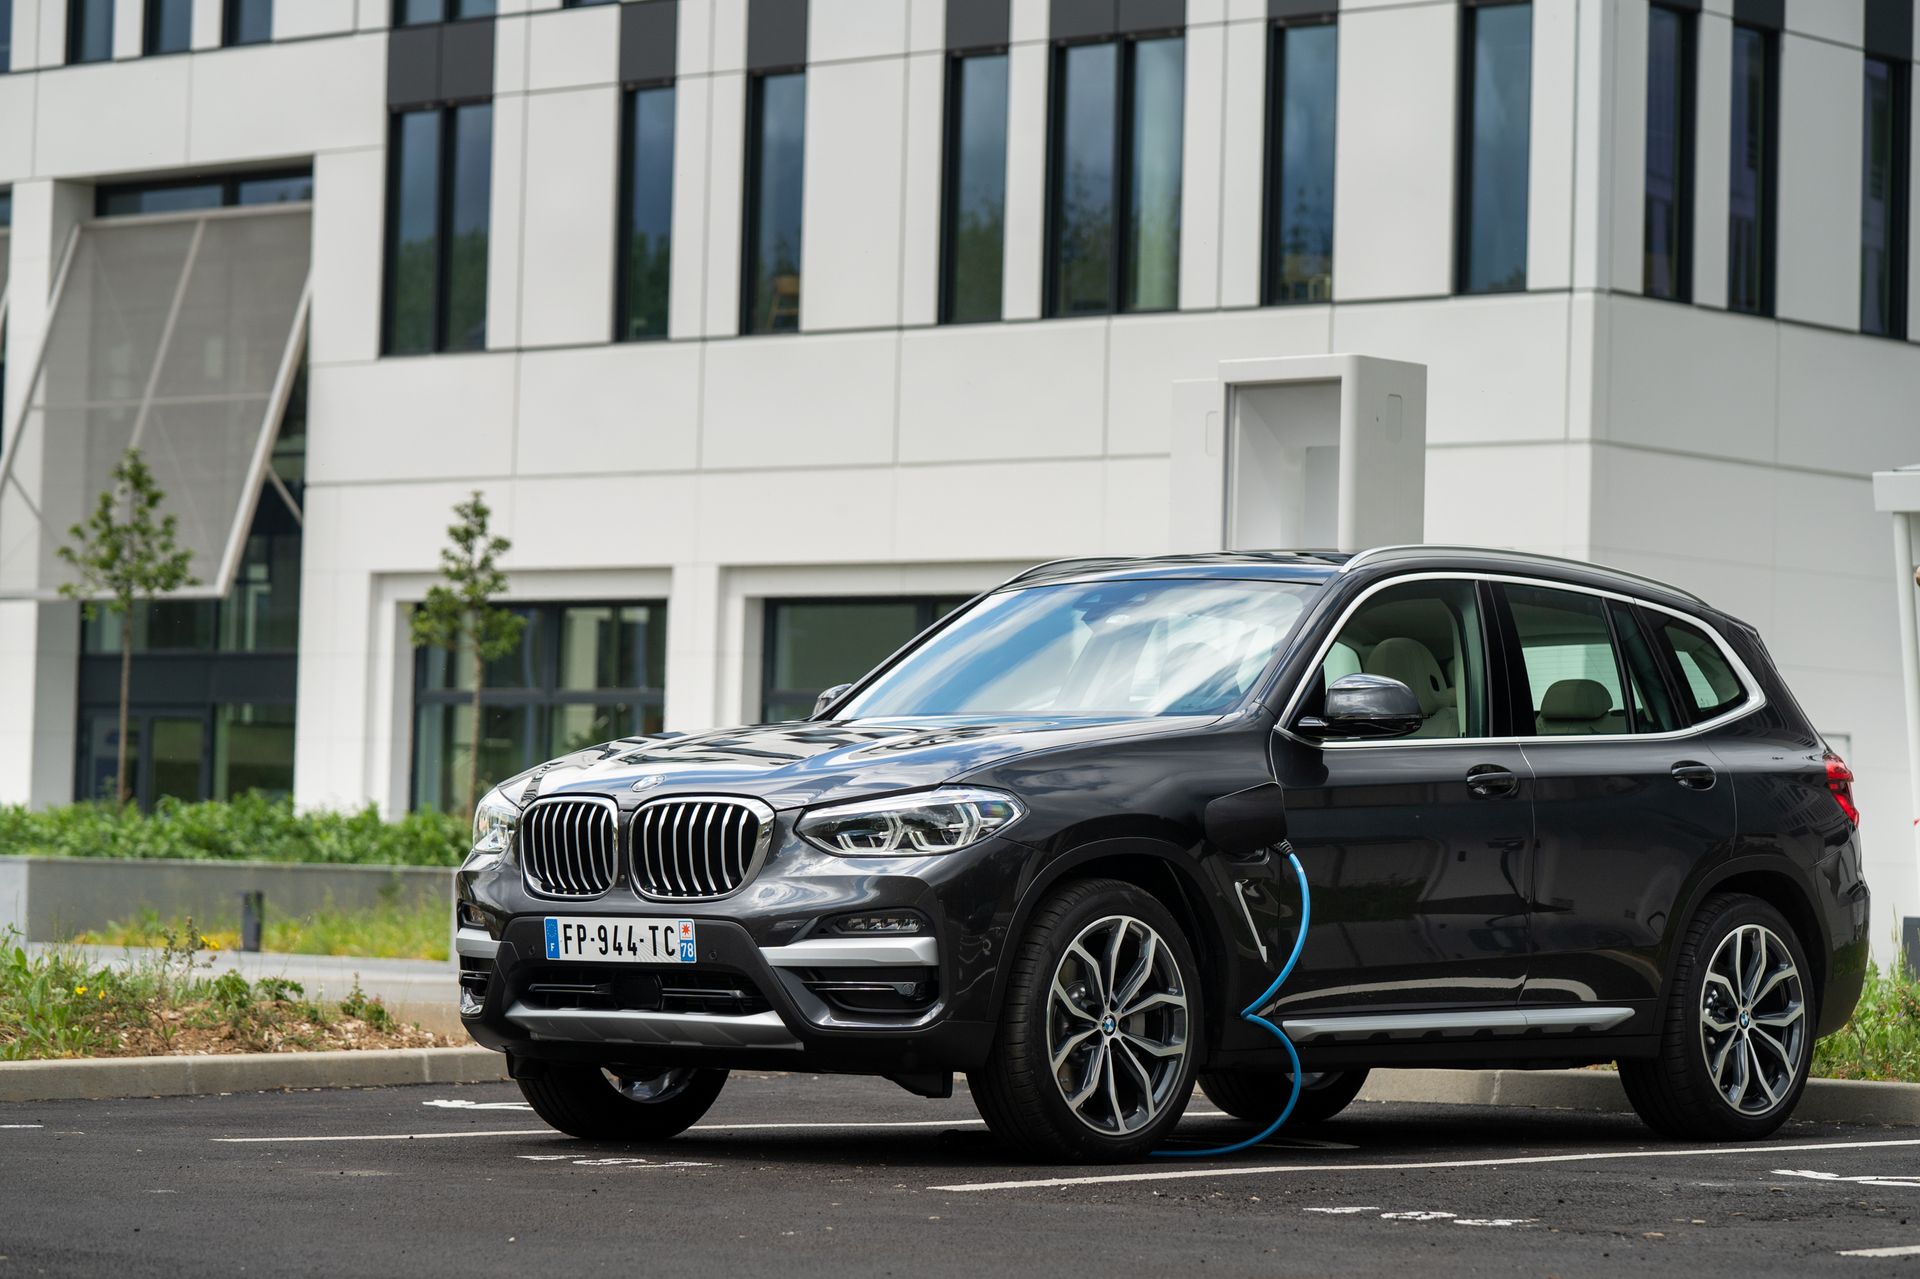 Les hybrides rechargeables de BMW au rappel pour risque d’incendie